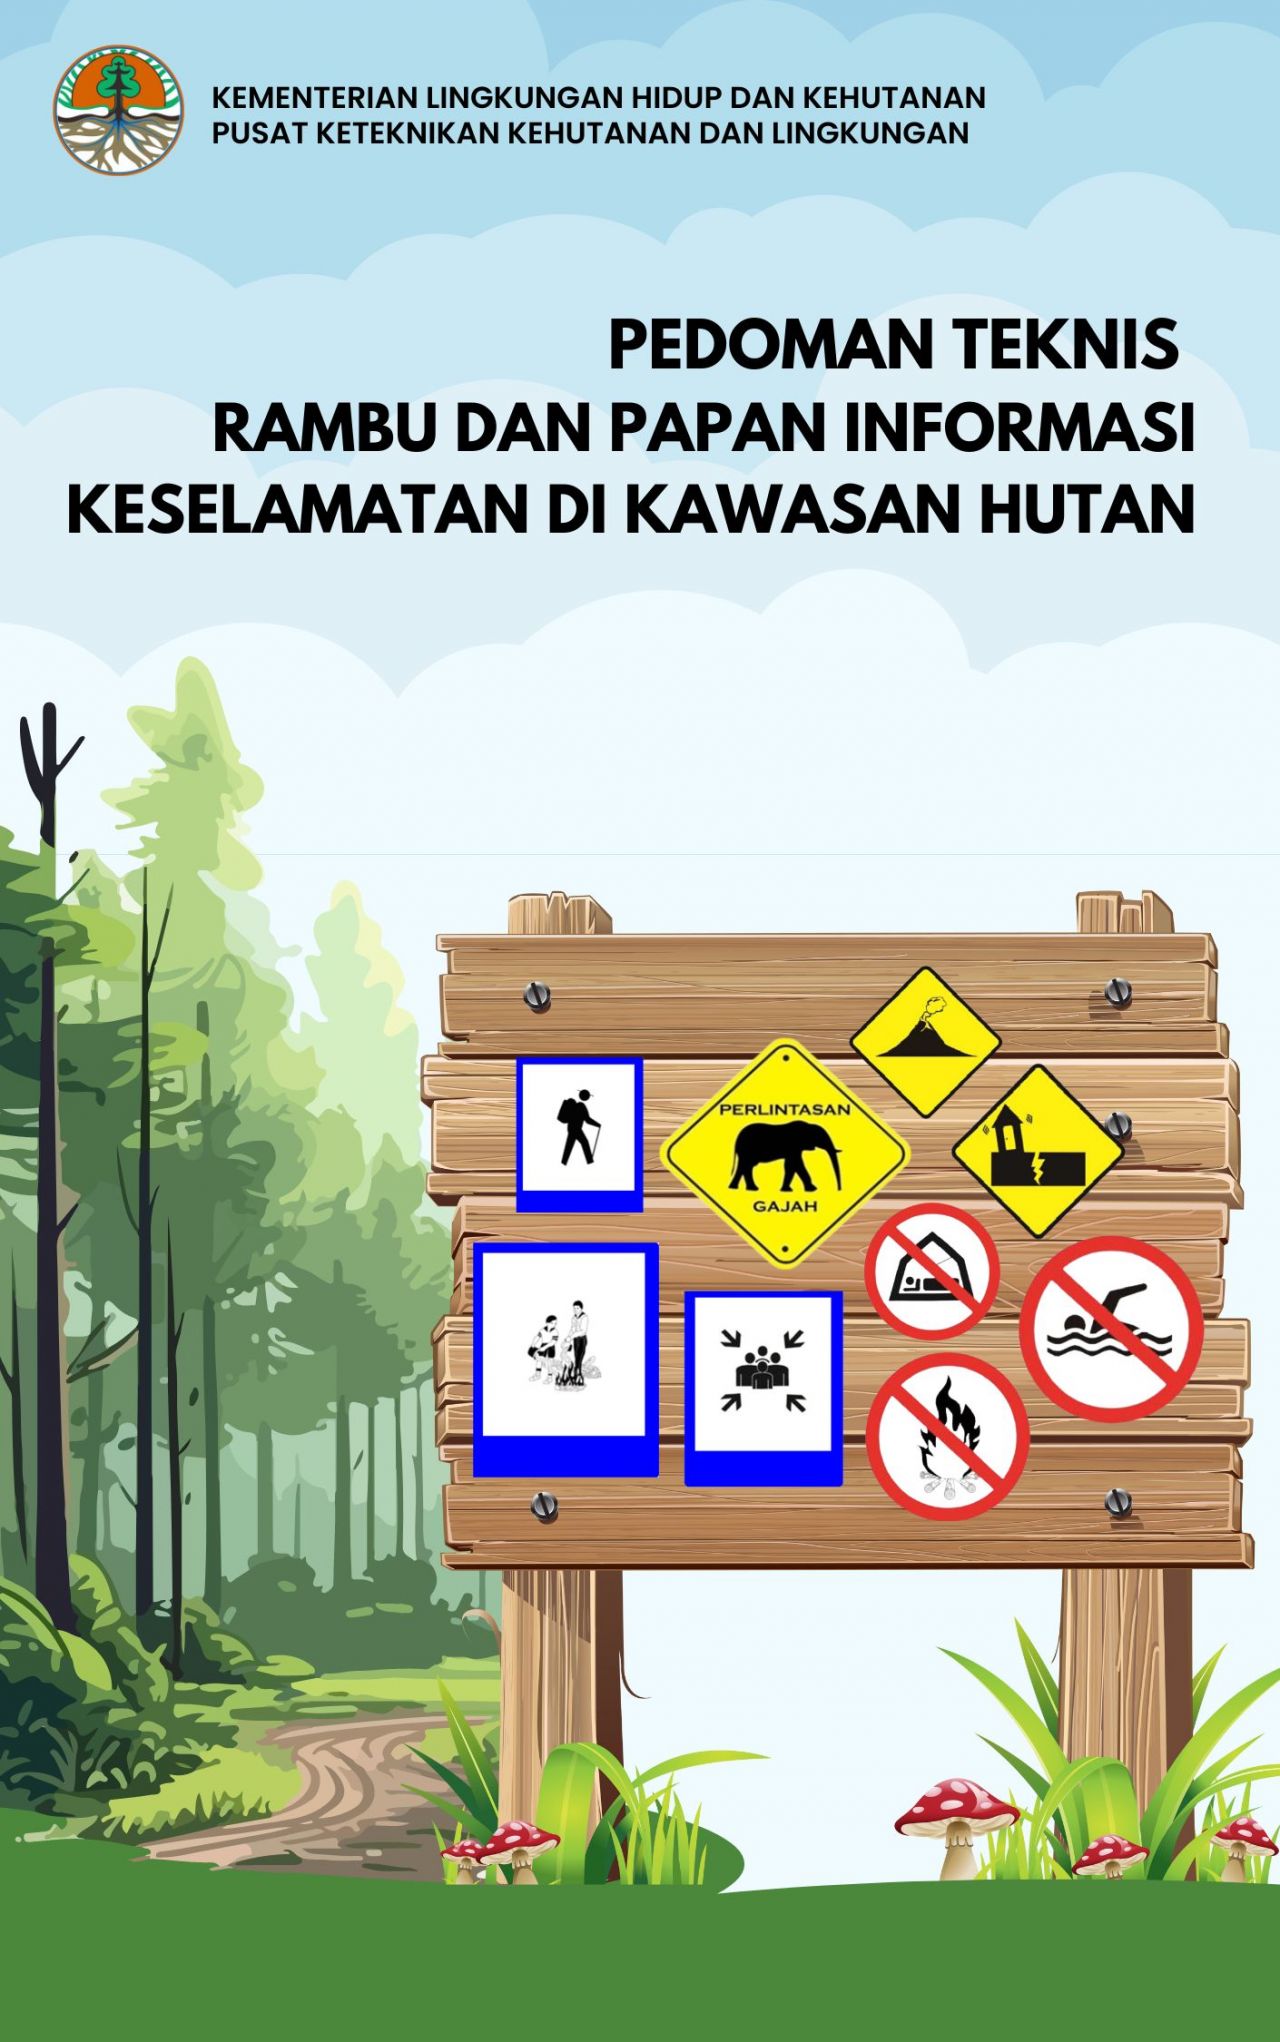 Pedoman Teknis Rambu dan Papan Informasi Keselamatan di Kawasan Hutan